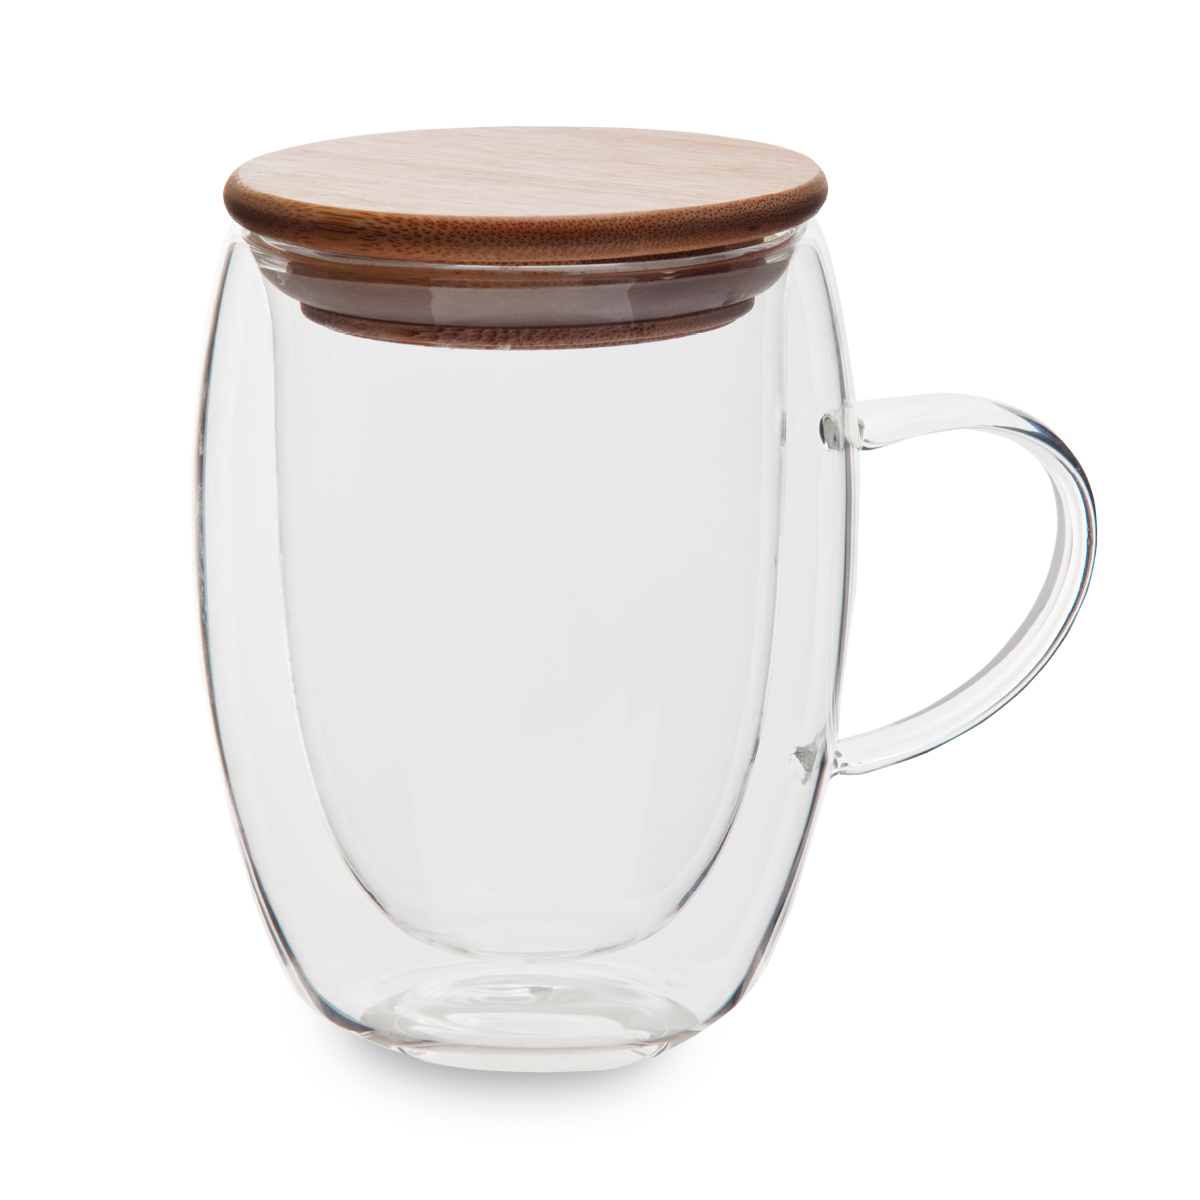 סאנדאי - כוס זכוכית עם מכסה במבוק, נפח: 350 מ”ל.
זכוכית בורוסיליקט.
עמידה למים רותחים.
ידית אחיזה.